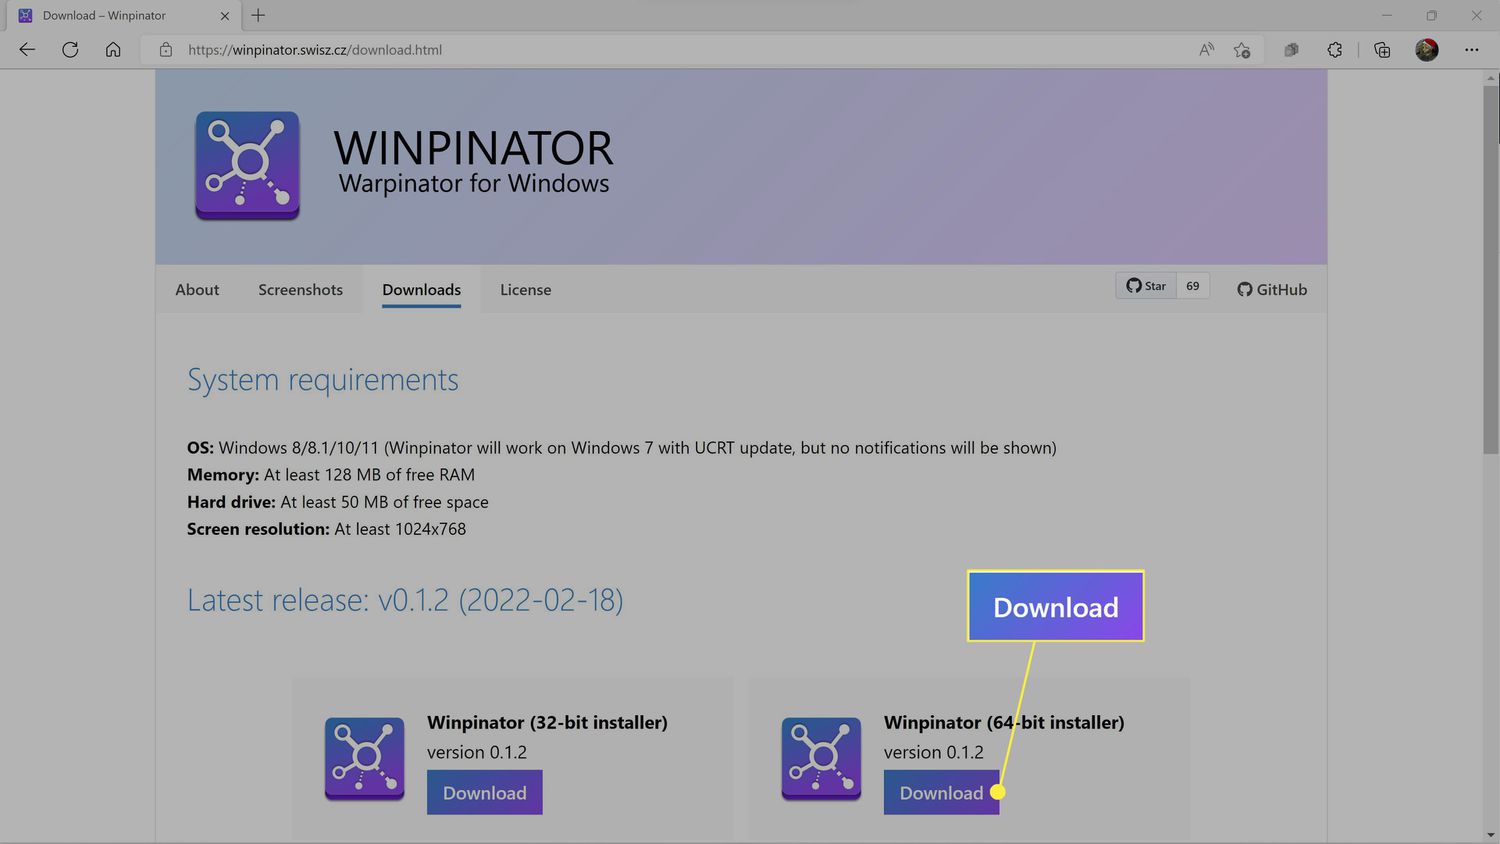 Η λήψη επισημαίνεται στον ιστότοπο Winpinator.